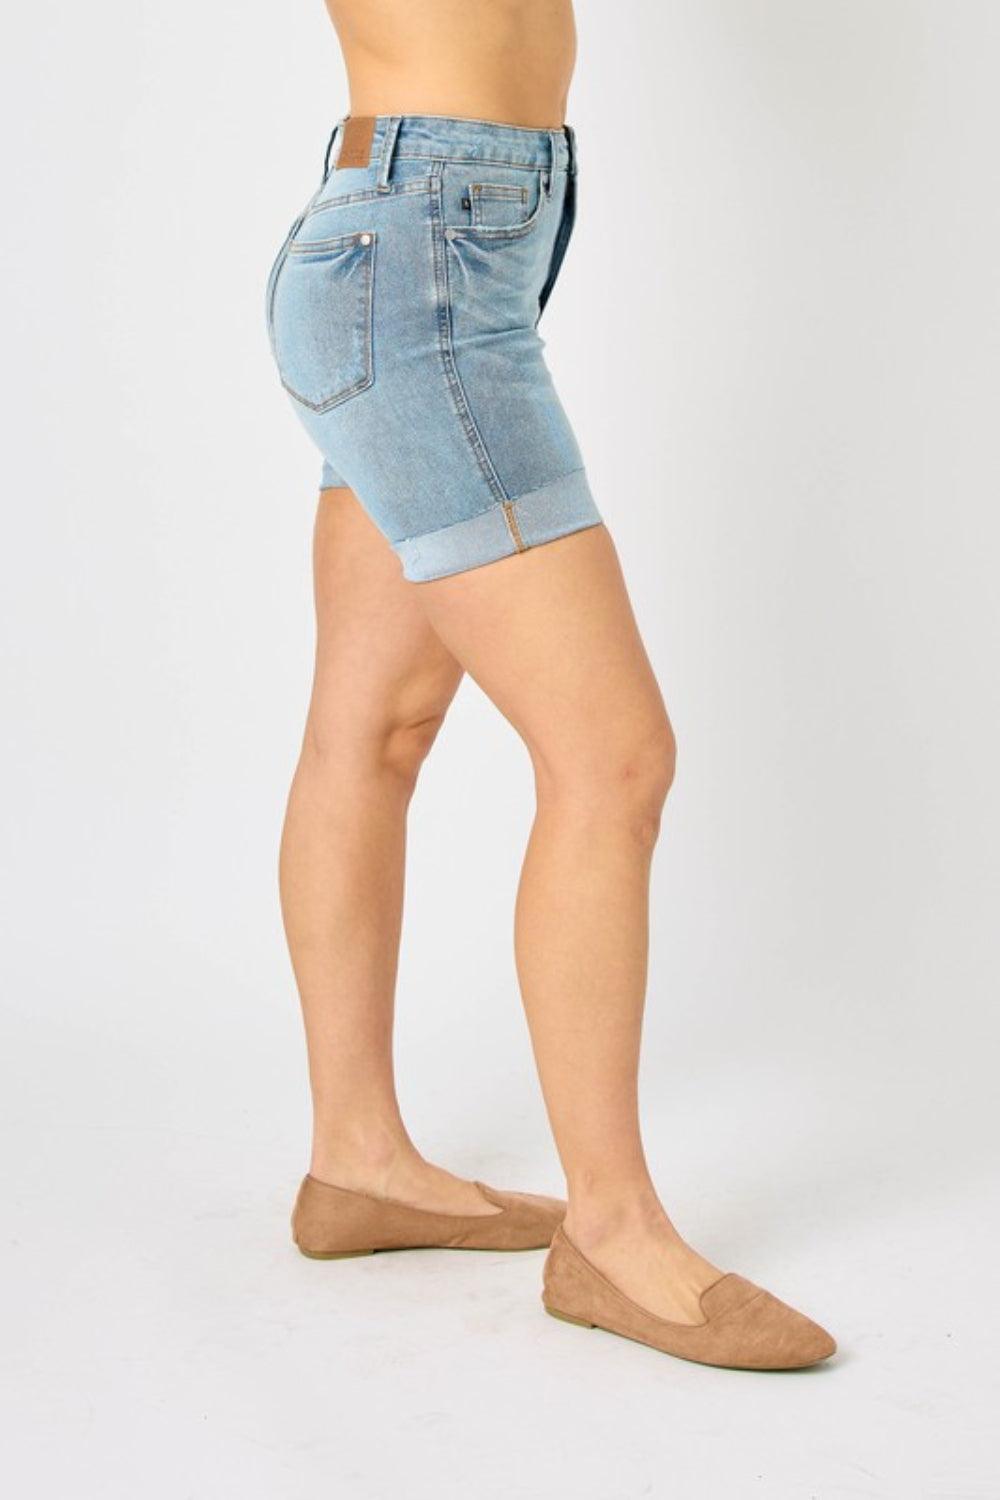 Judy Blue Full Size Tummy Control Denim Shorts - AMIClubwear